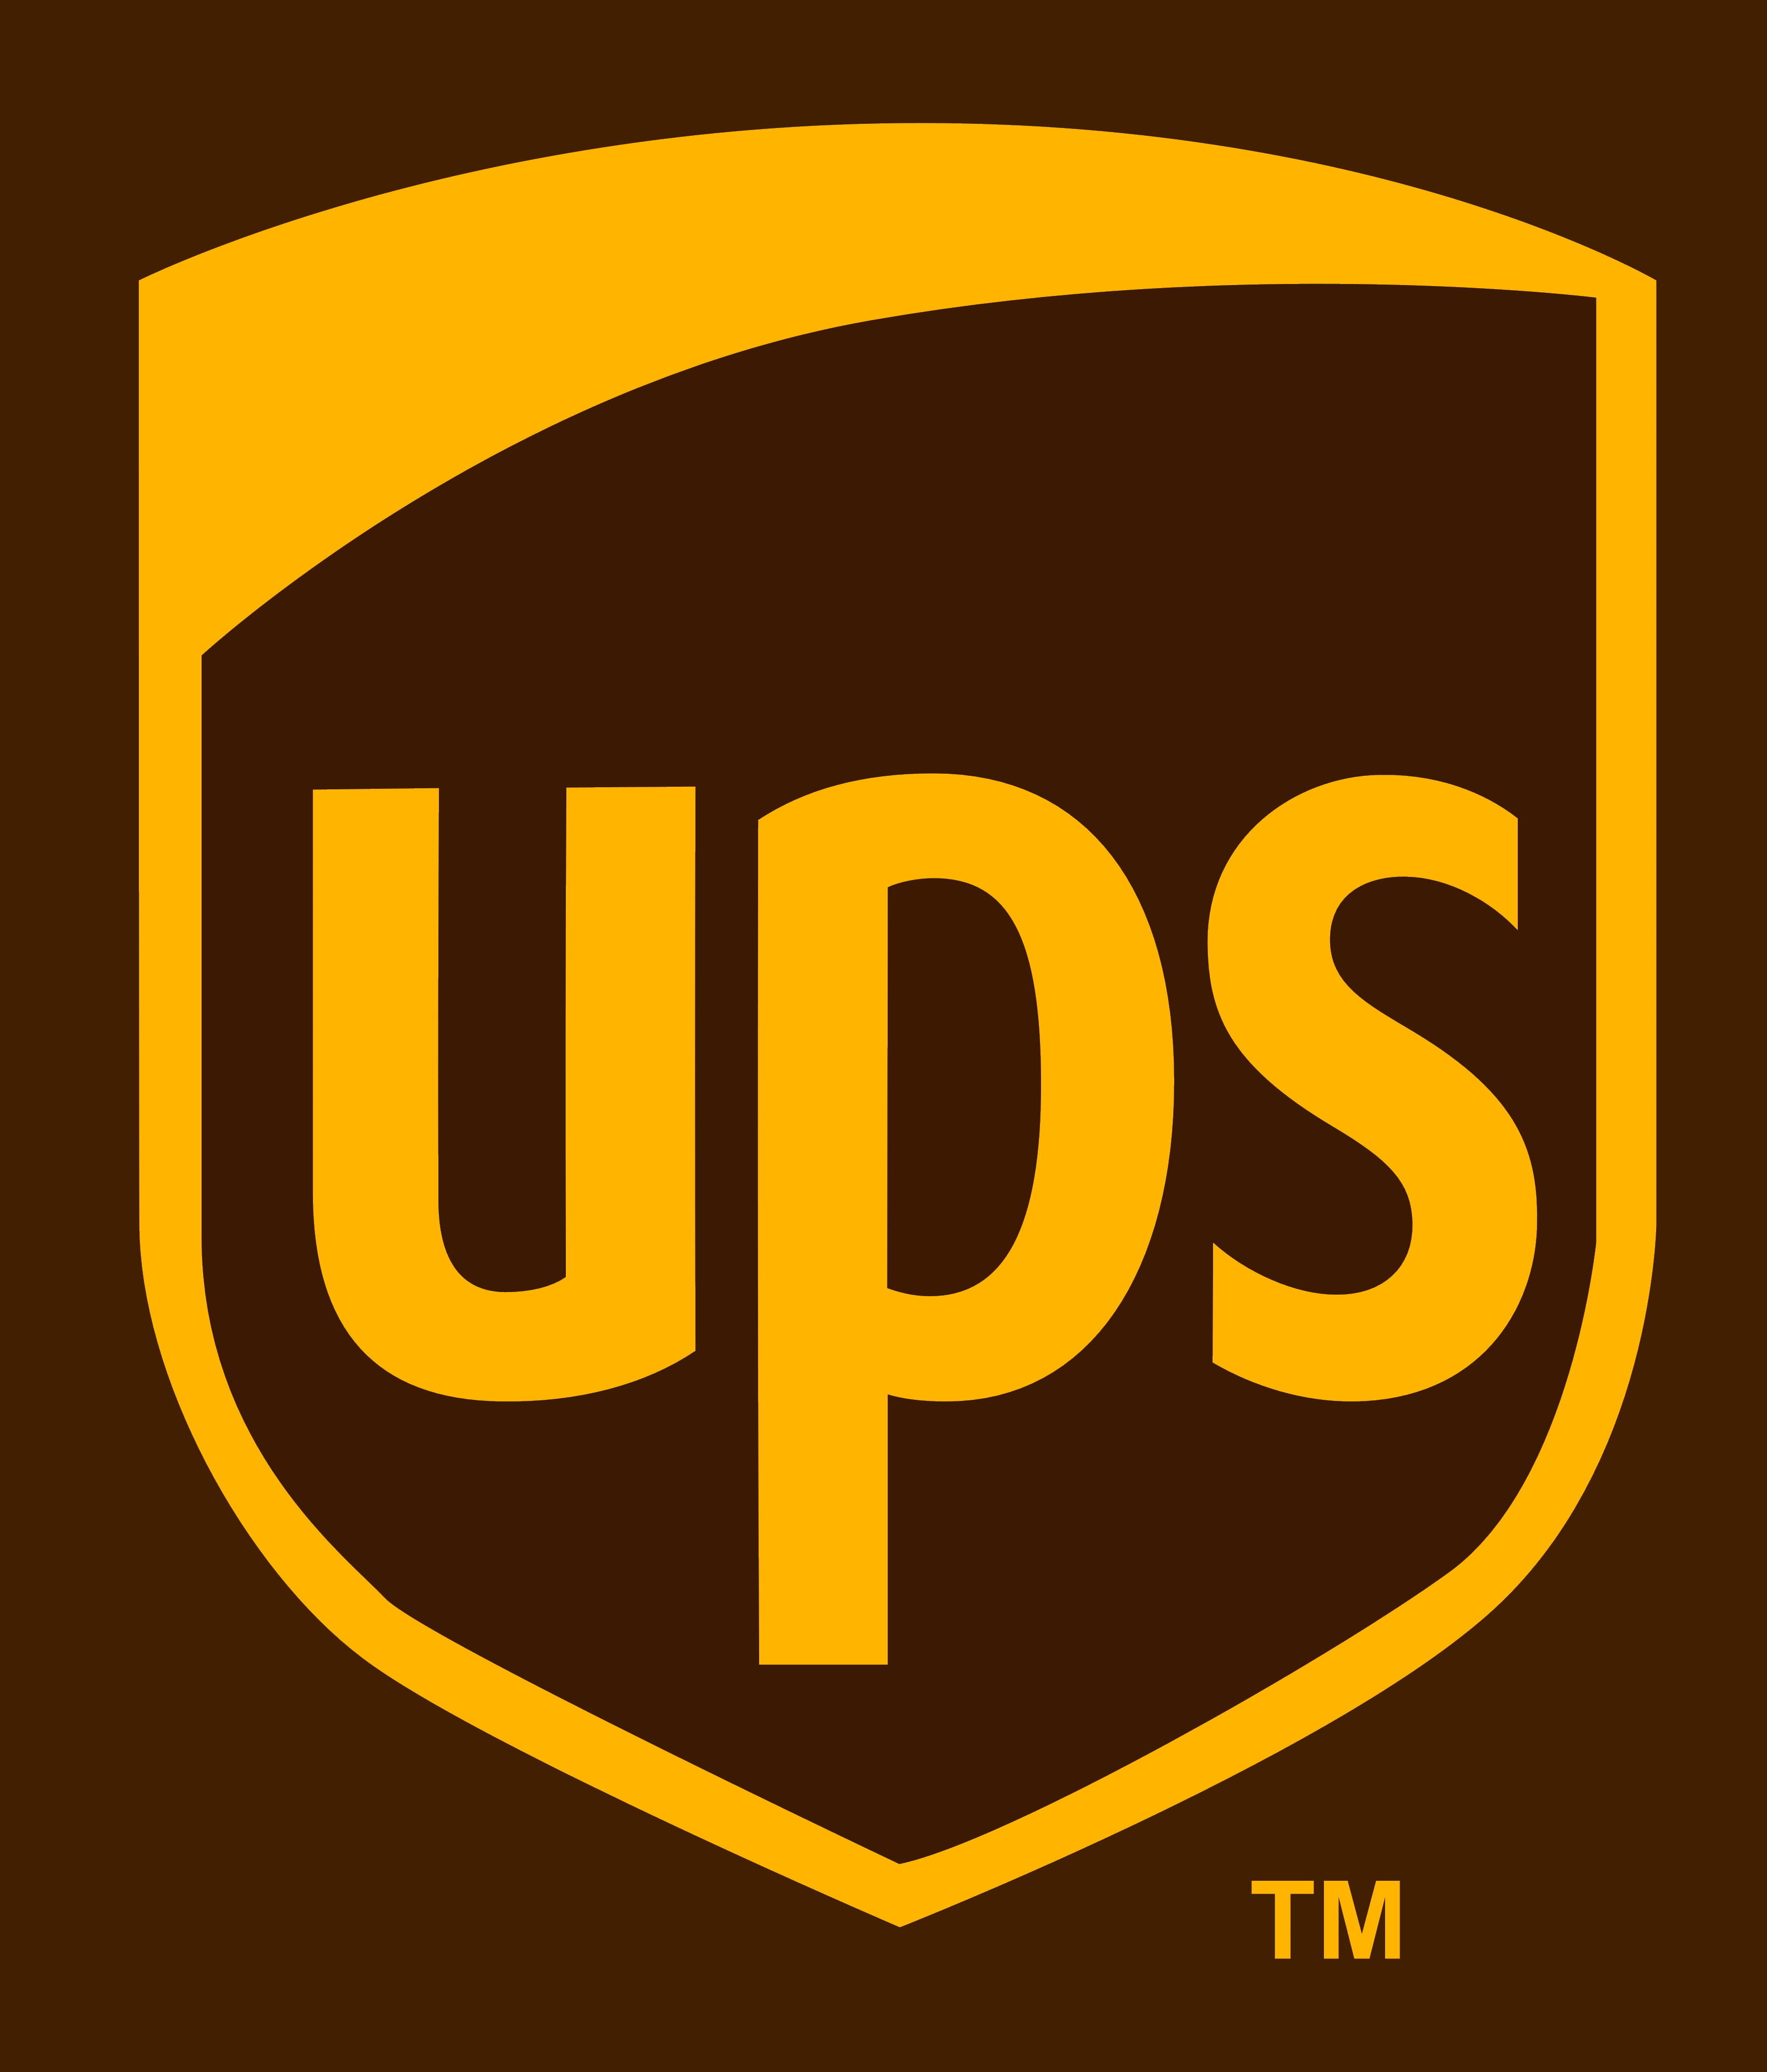 UPS – Logos Download